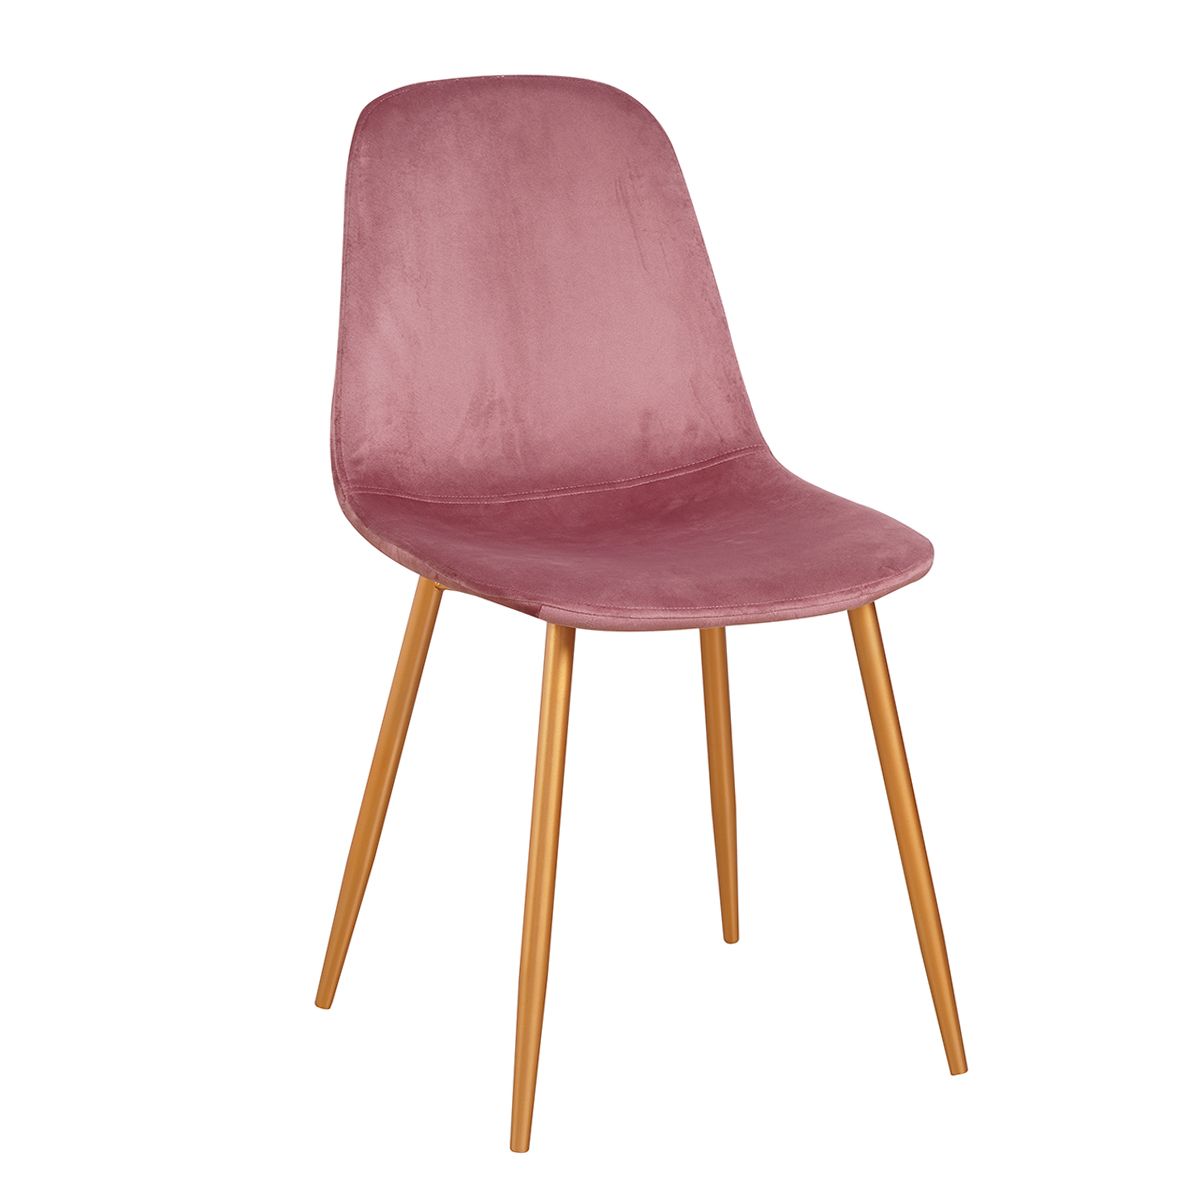 Artelibre Καρέκλα AUDUBON Ροζ/Χρυσό Ύφασμα/Ξύλο 44x52x85cm